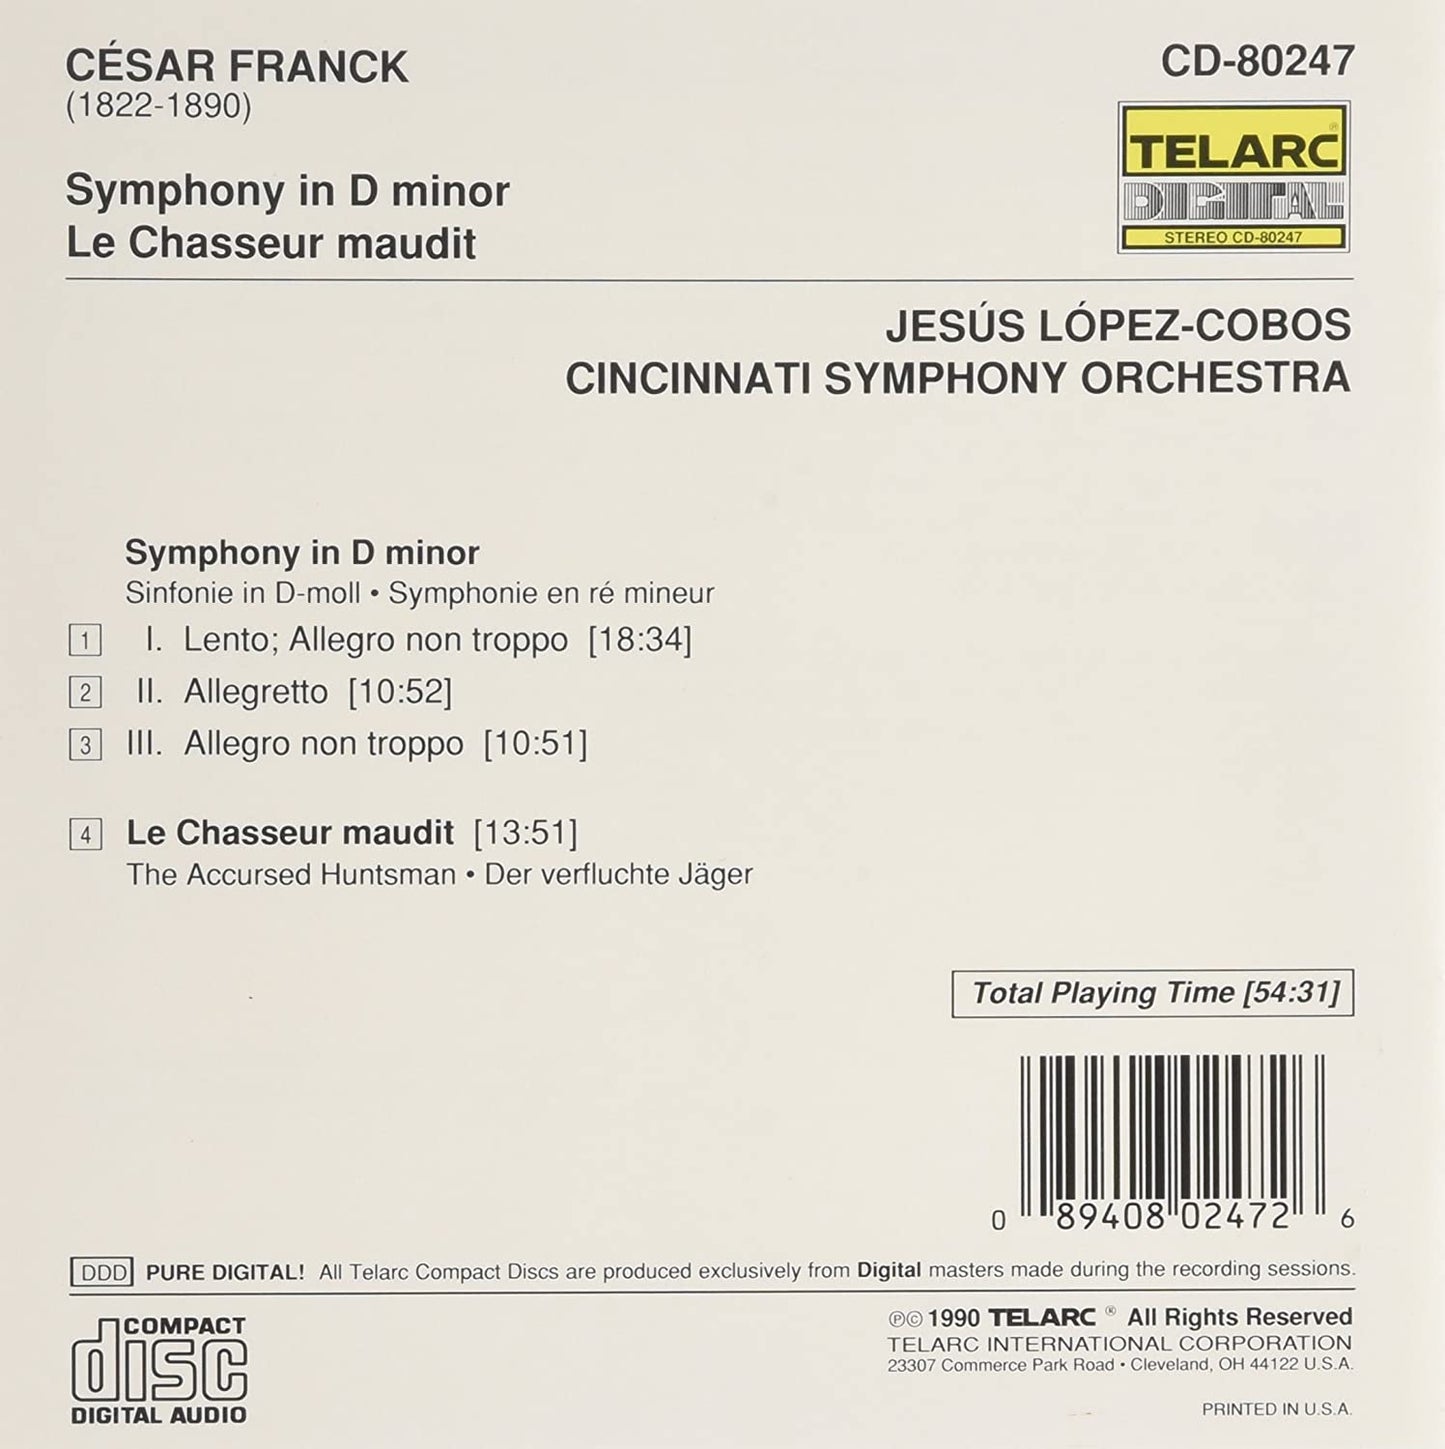 FRANCK: SYMPHONY IN D MINOR; Le CHASSEUR MAUDIT - Cobos-Lopez, Cincinnati Symphony Orchestra